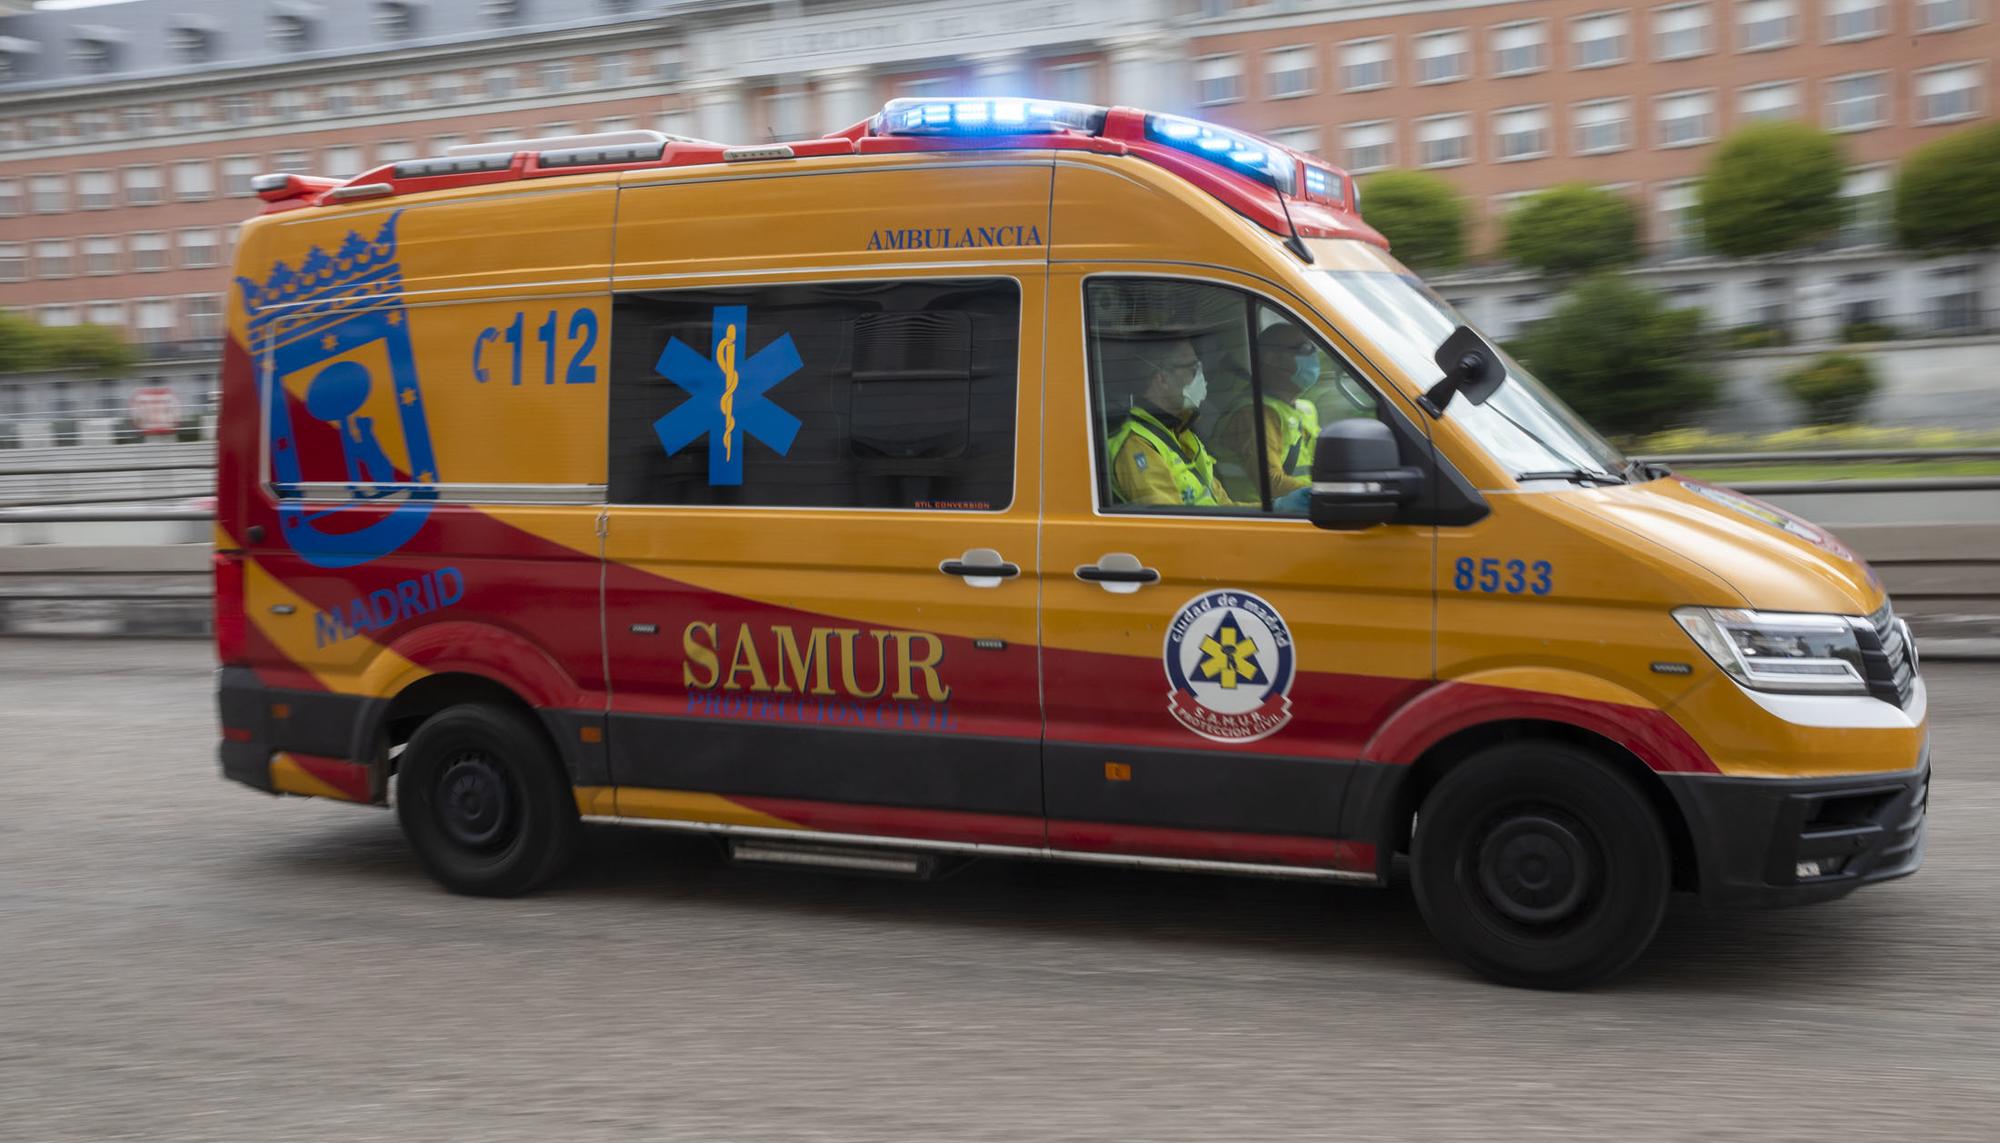 Moncloa - 6 Ambulancia Samur